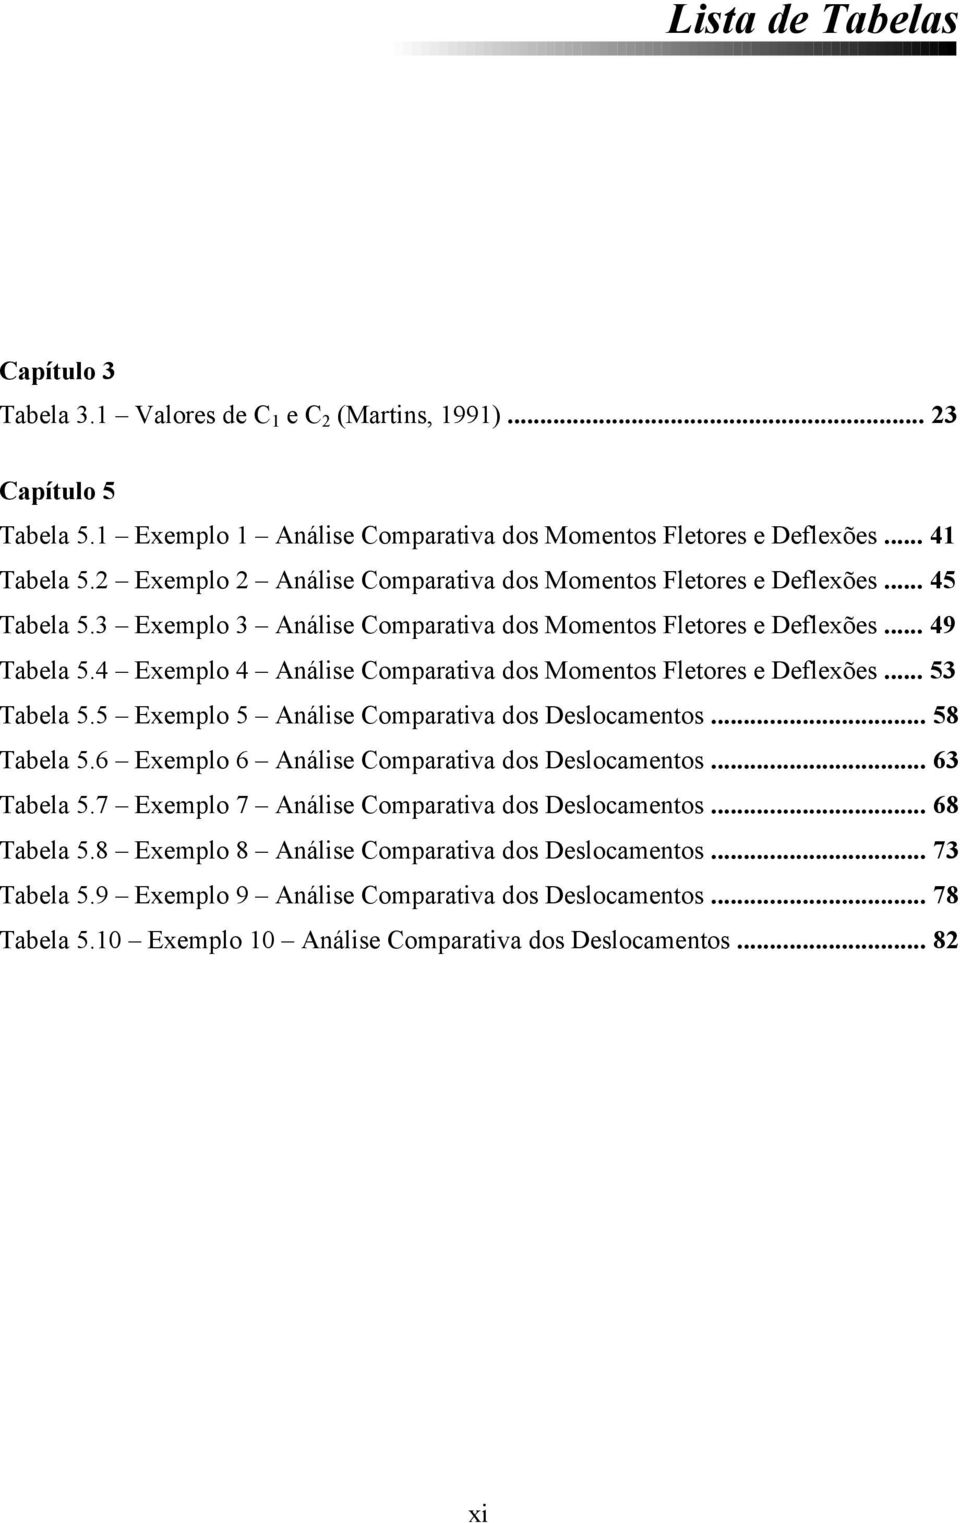 4 Exemplo 4 Análse Comparatva dos Momentos Fletores e Deflexões... 53 Tabela 5.5 Exemplo 5 Análse Comparatva dos Deslocamentos... 58 Tabela 5.6 Exemplo 6 Análse Comparatva dos Deslocamentos.